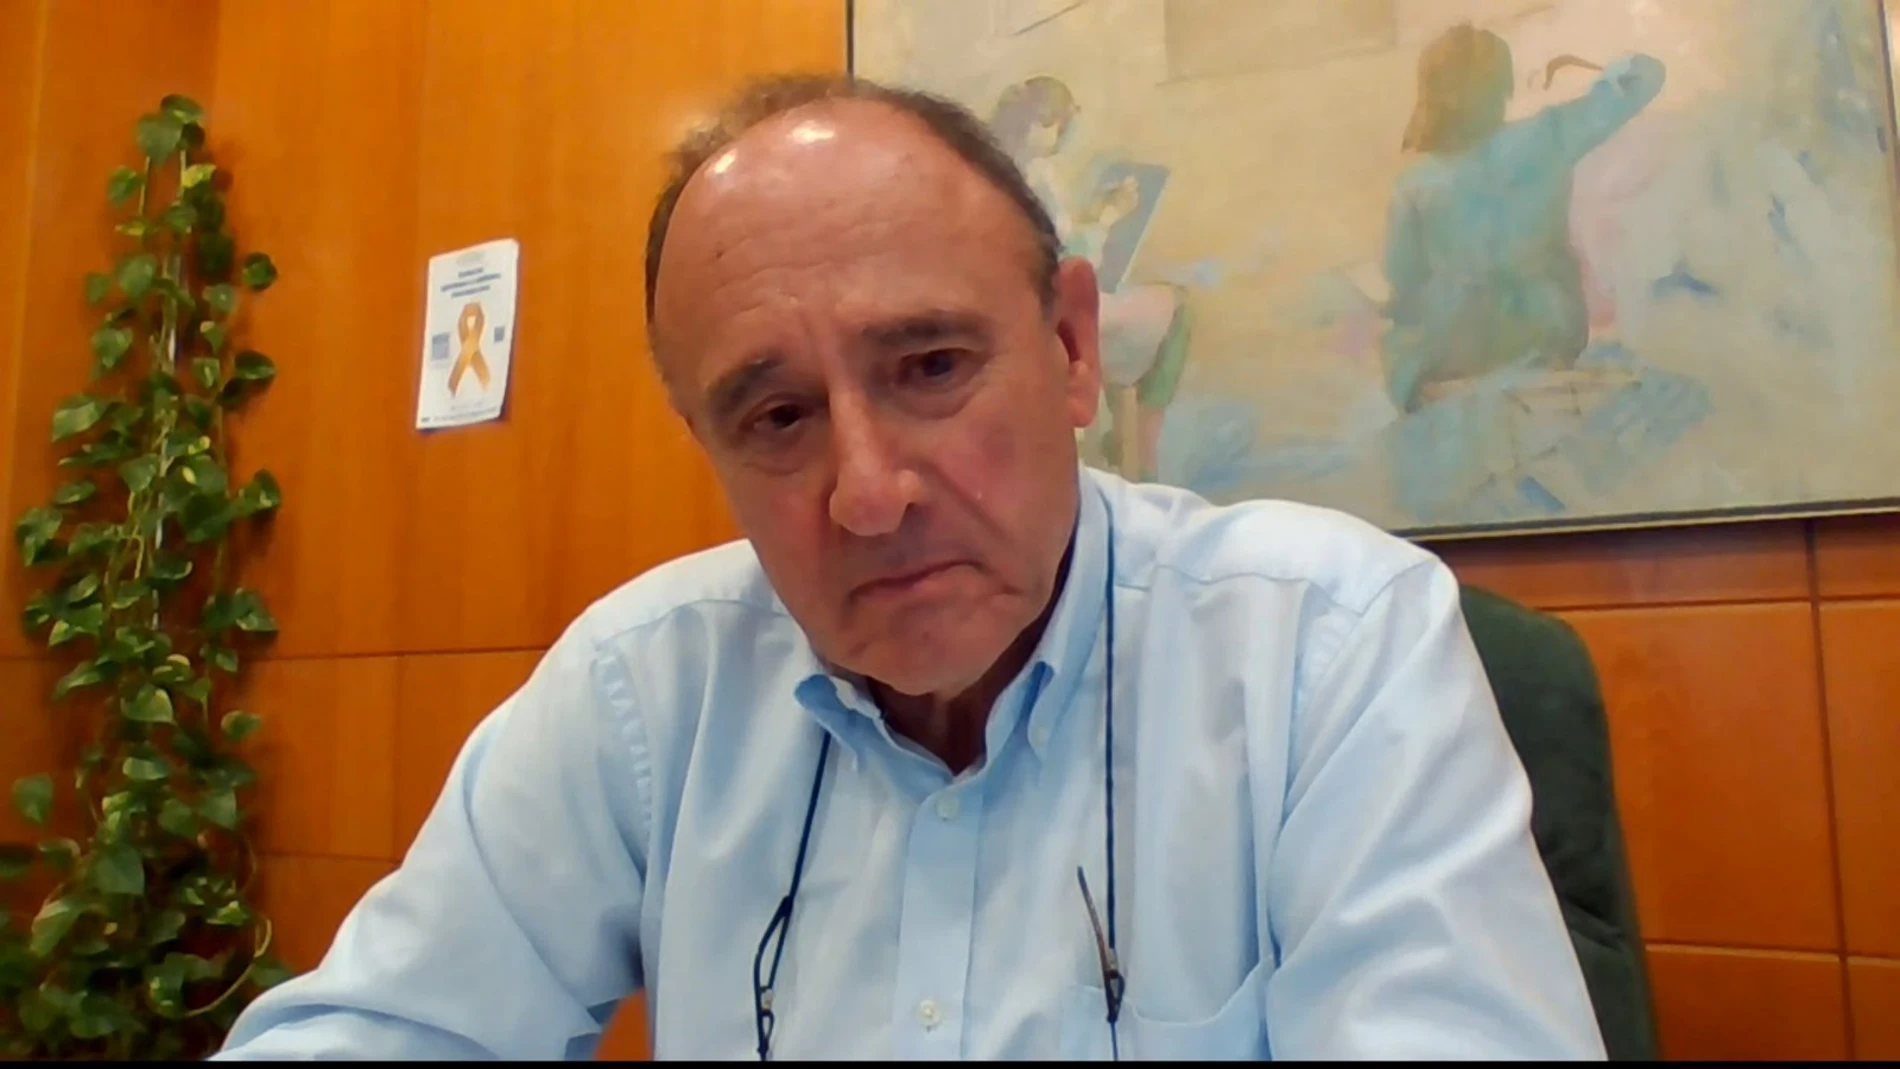 Manuel García Bengoechea, doctor, sobre el aumento de contagios: "Nos dimos por satisfechos con el confinamiento y se redujo la vigilancia”